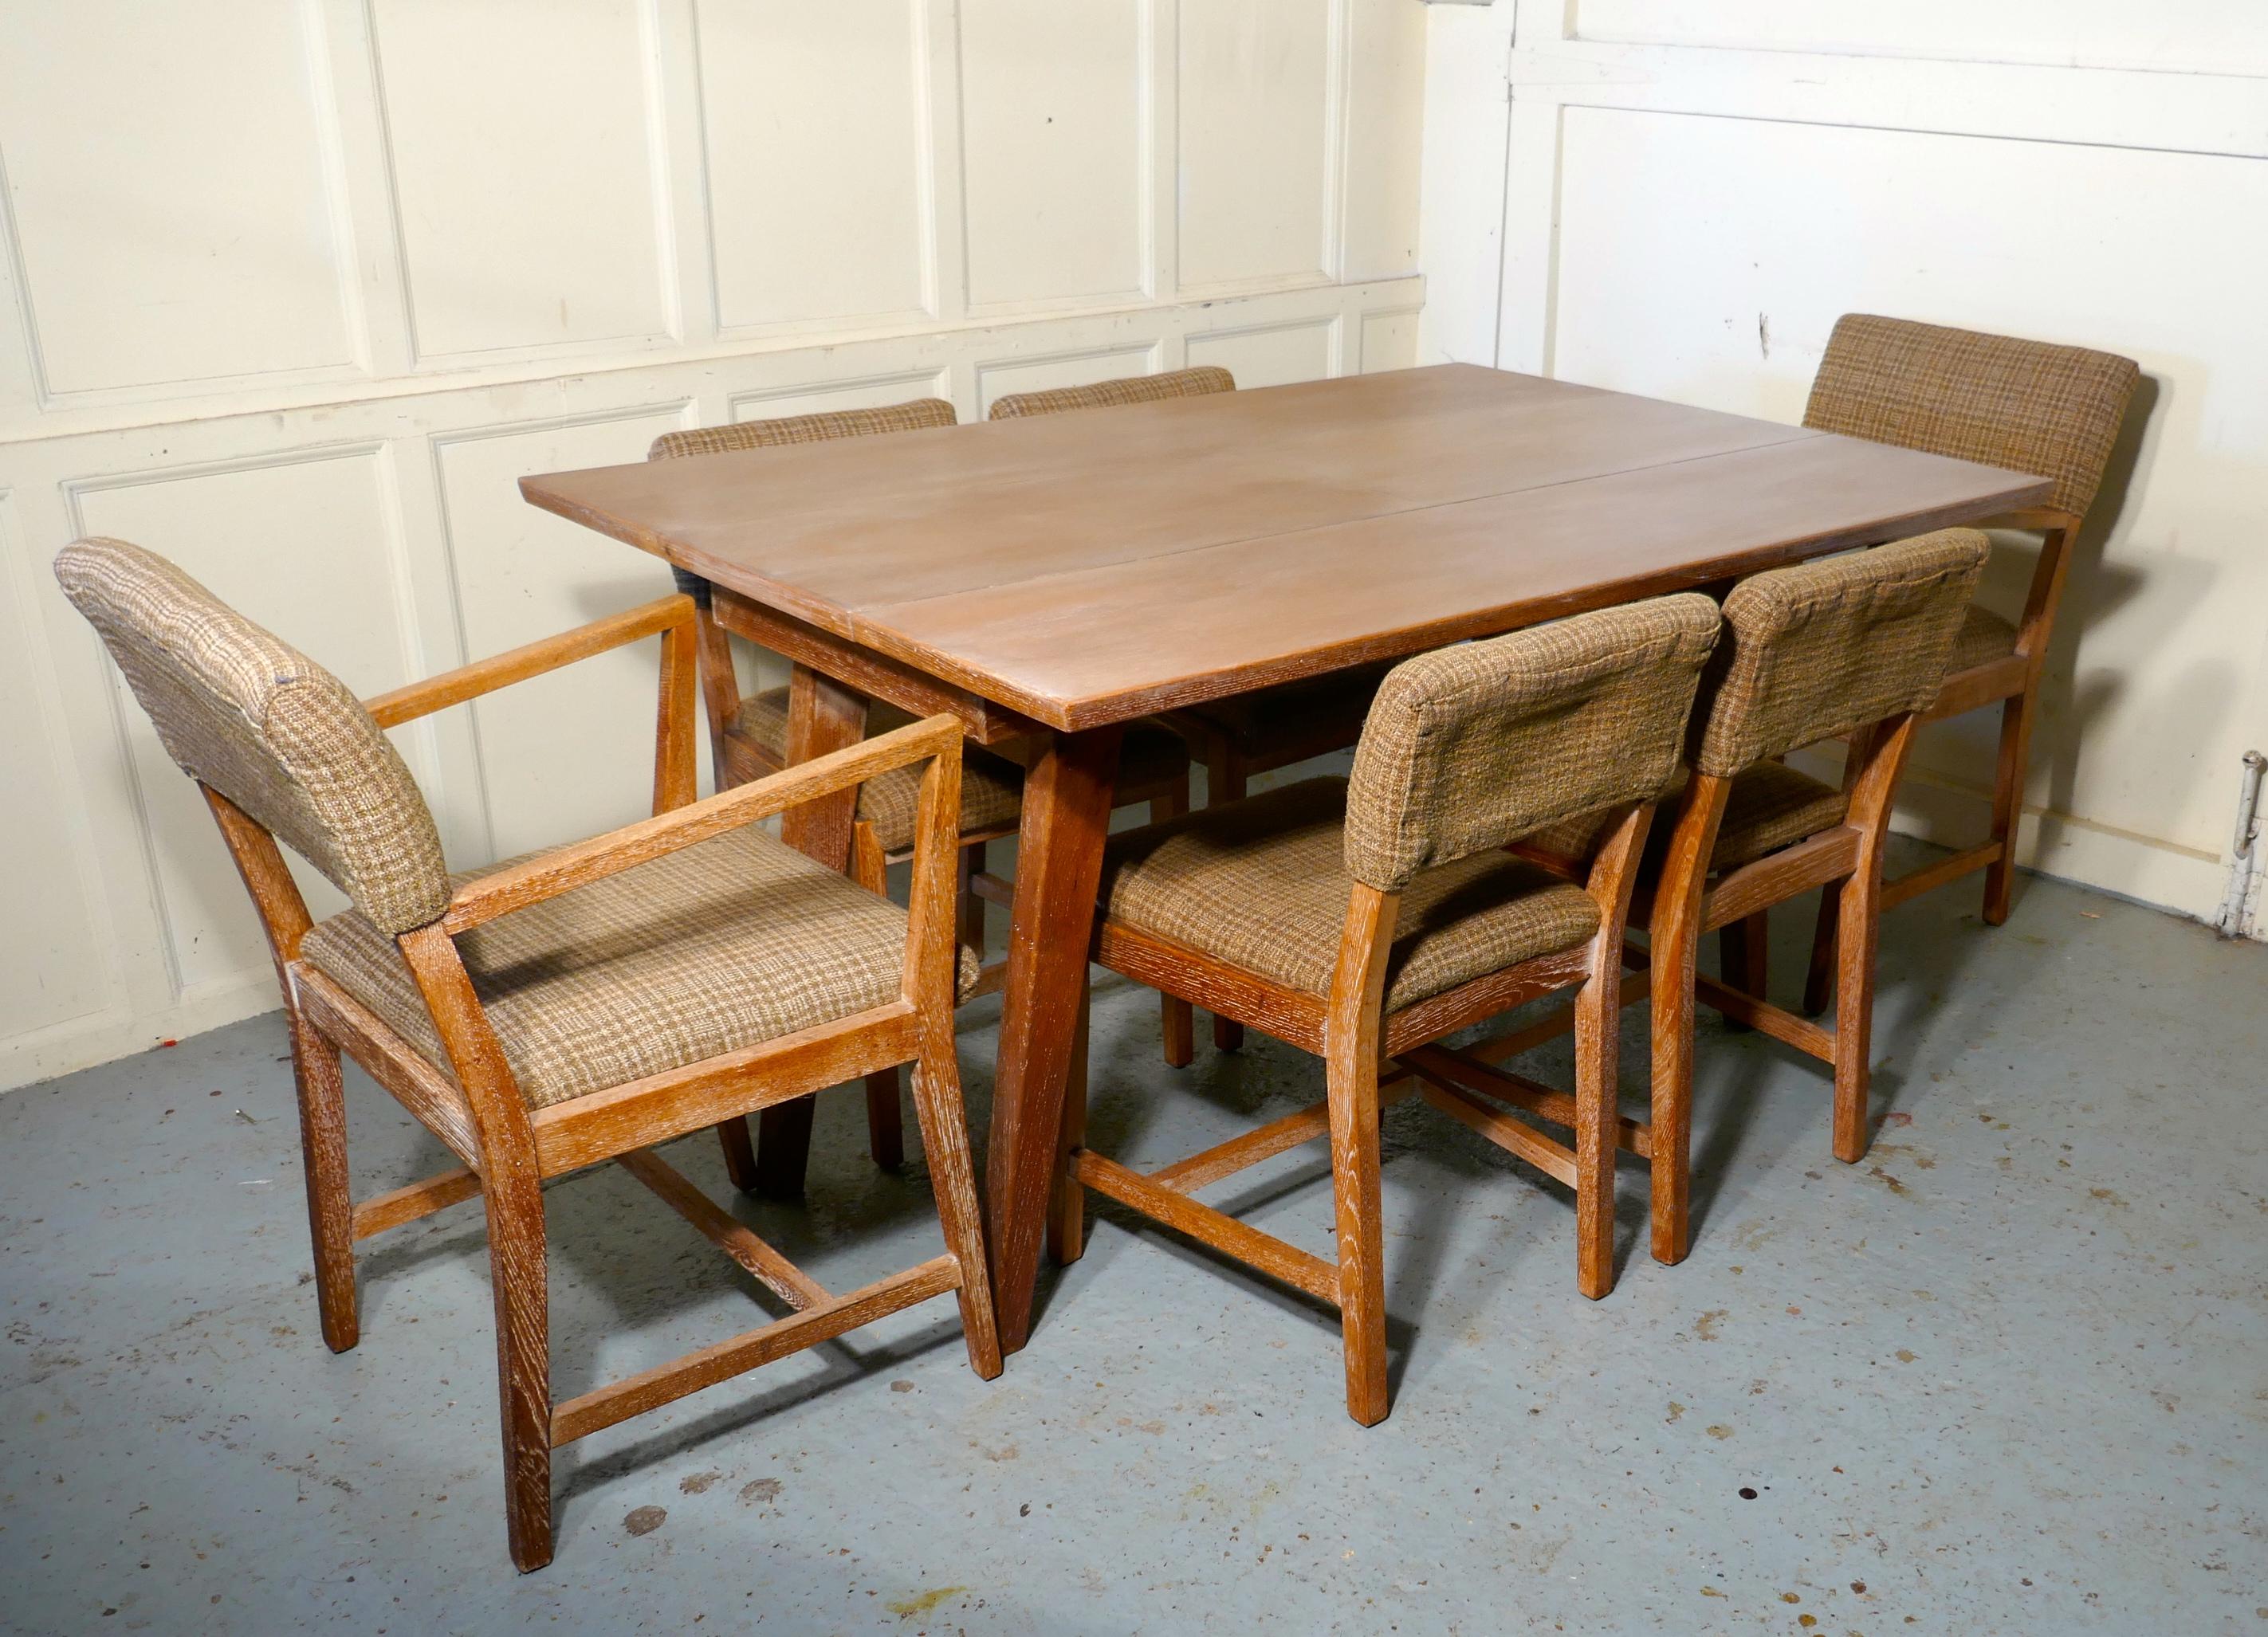 Gekalkter Eichen-Esstisch und 6 Stühle

Ein sehr seltenes Set. Der Tisch mit gespreizten Beinen lässt sich in der Mitte auseinanderziehen, so dass eine mittlere Platte aufklappen kann, die aus einem kleinen, schmalen Tisch einen großen Esstisch mit